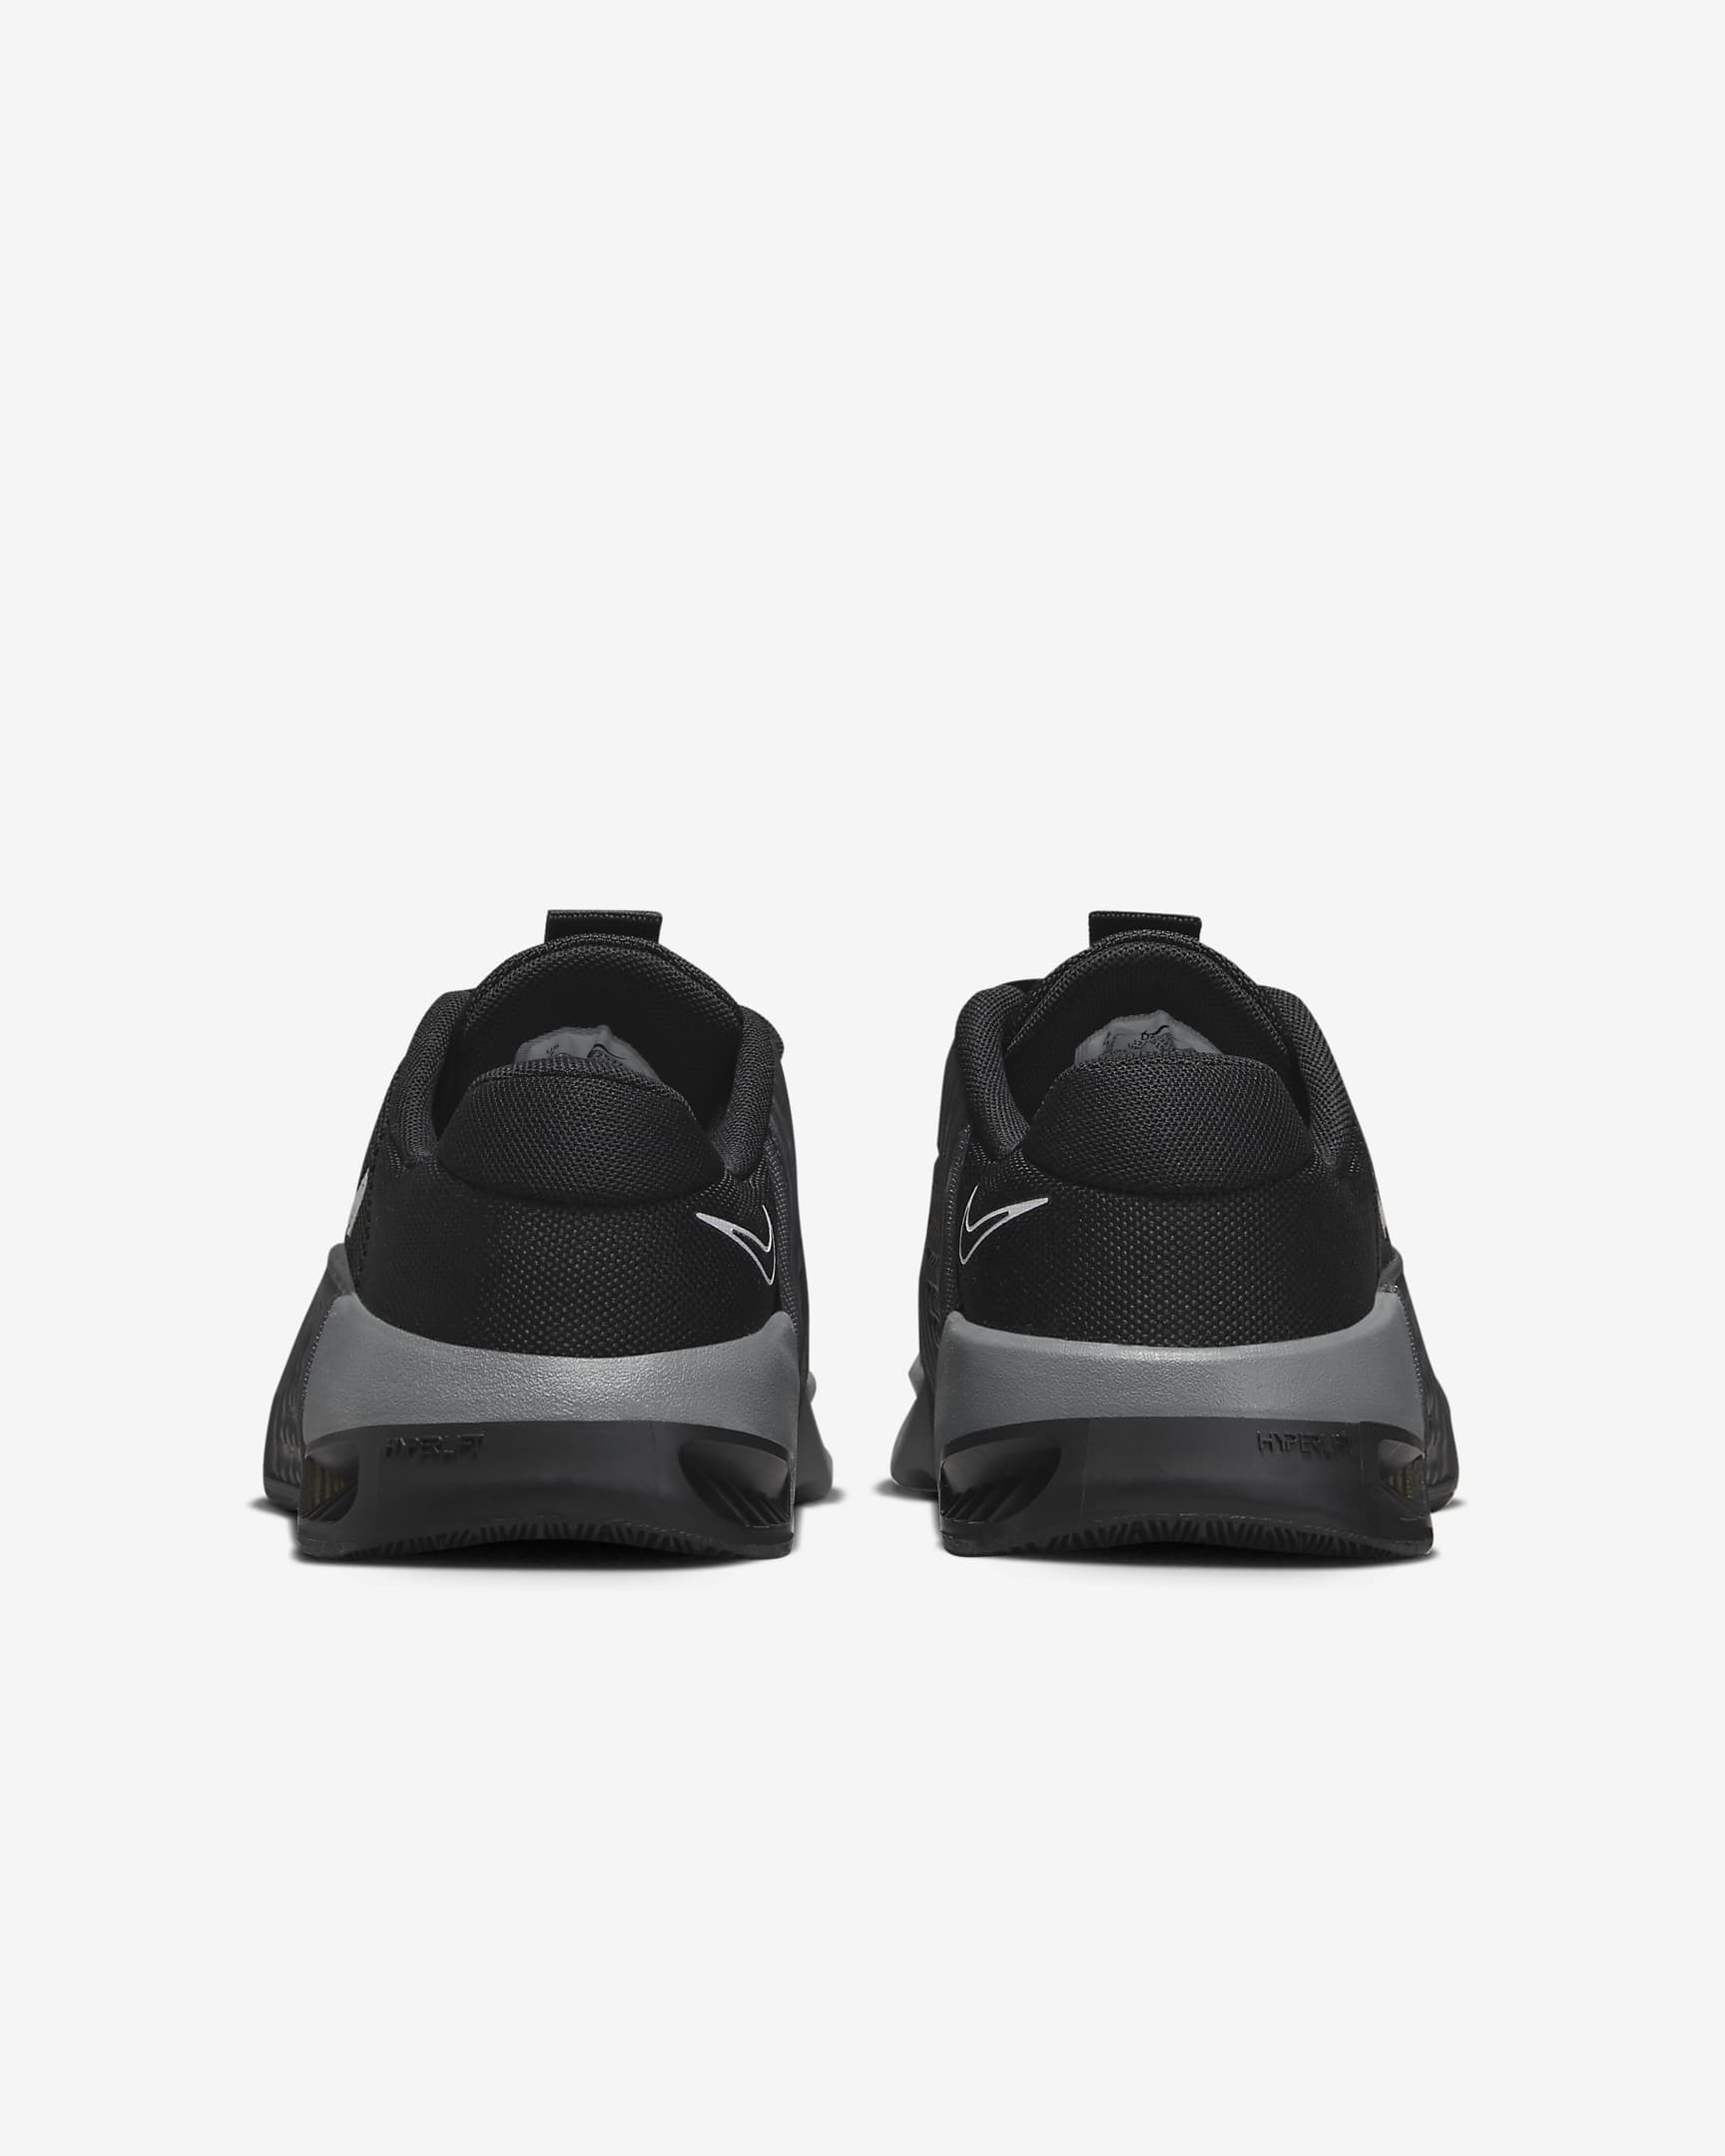 Nike Metcon 9 Women's Workout Shoes - Black/Anthracite/Smoke Grey/White